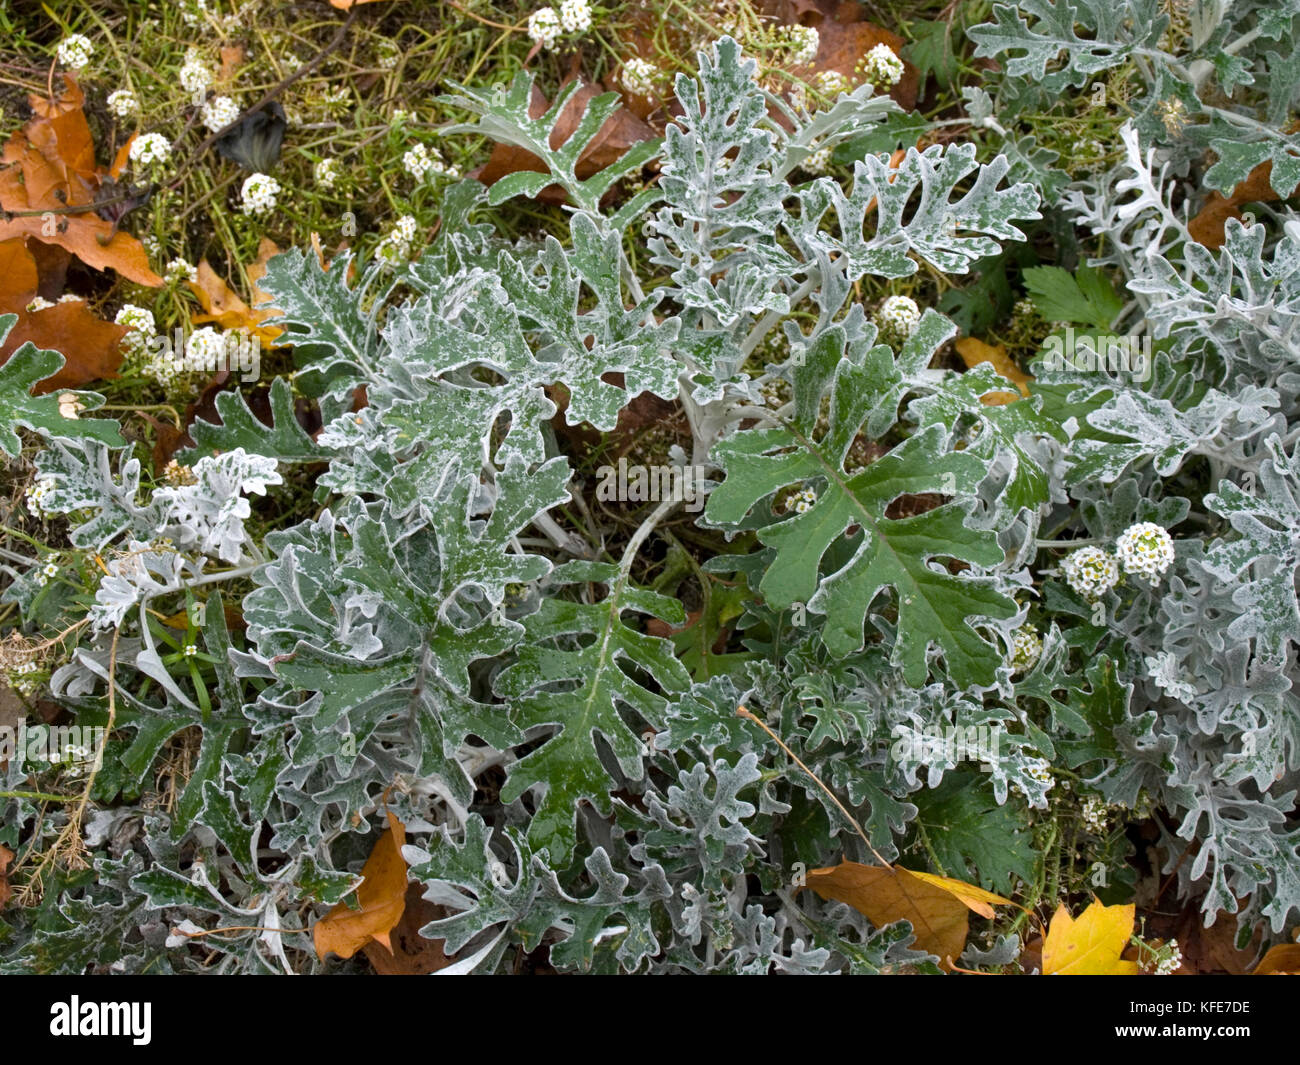 Senecio cineraria 'Silver Dust' shrub in autumn Stock Photo